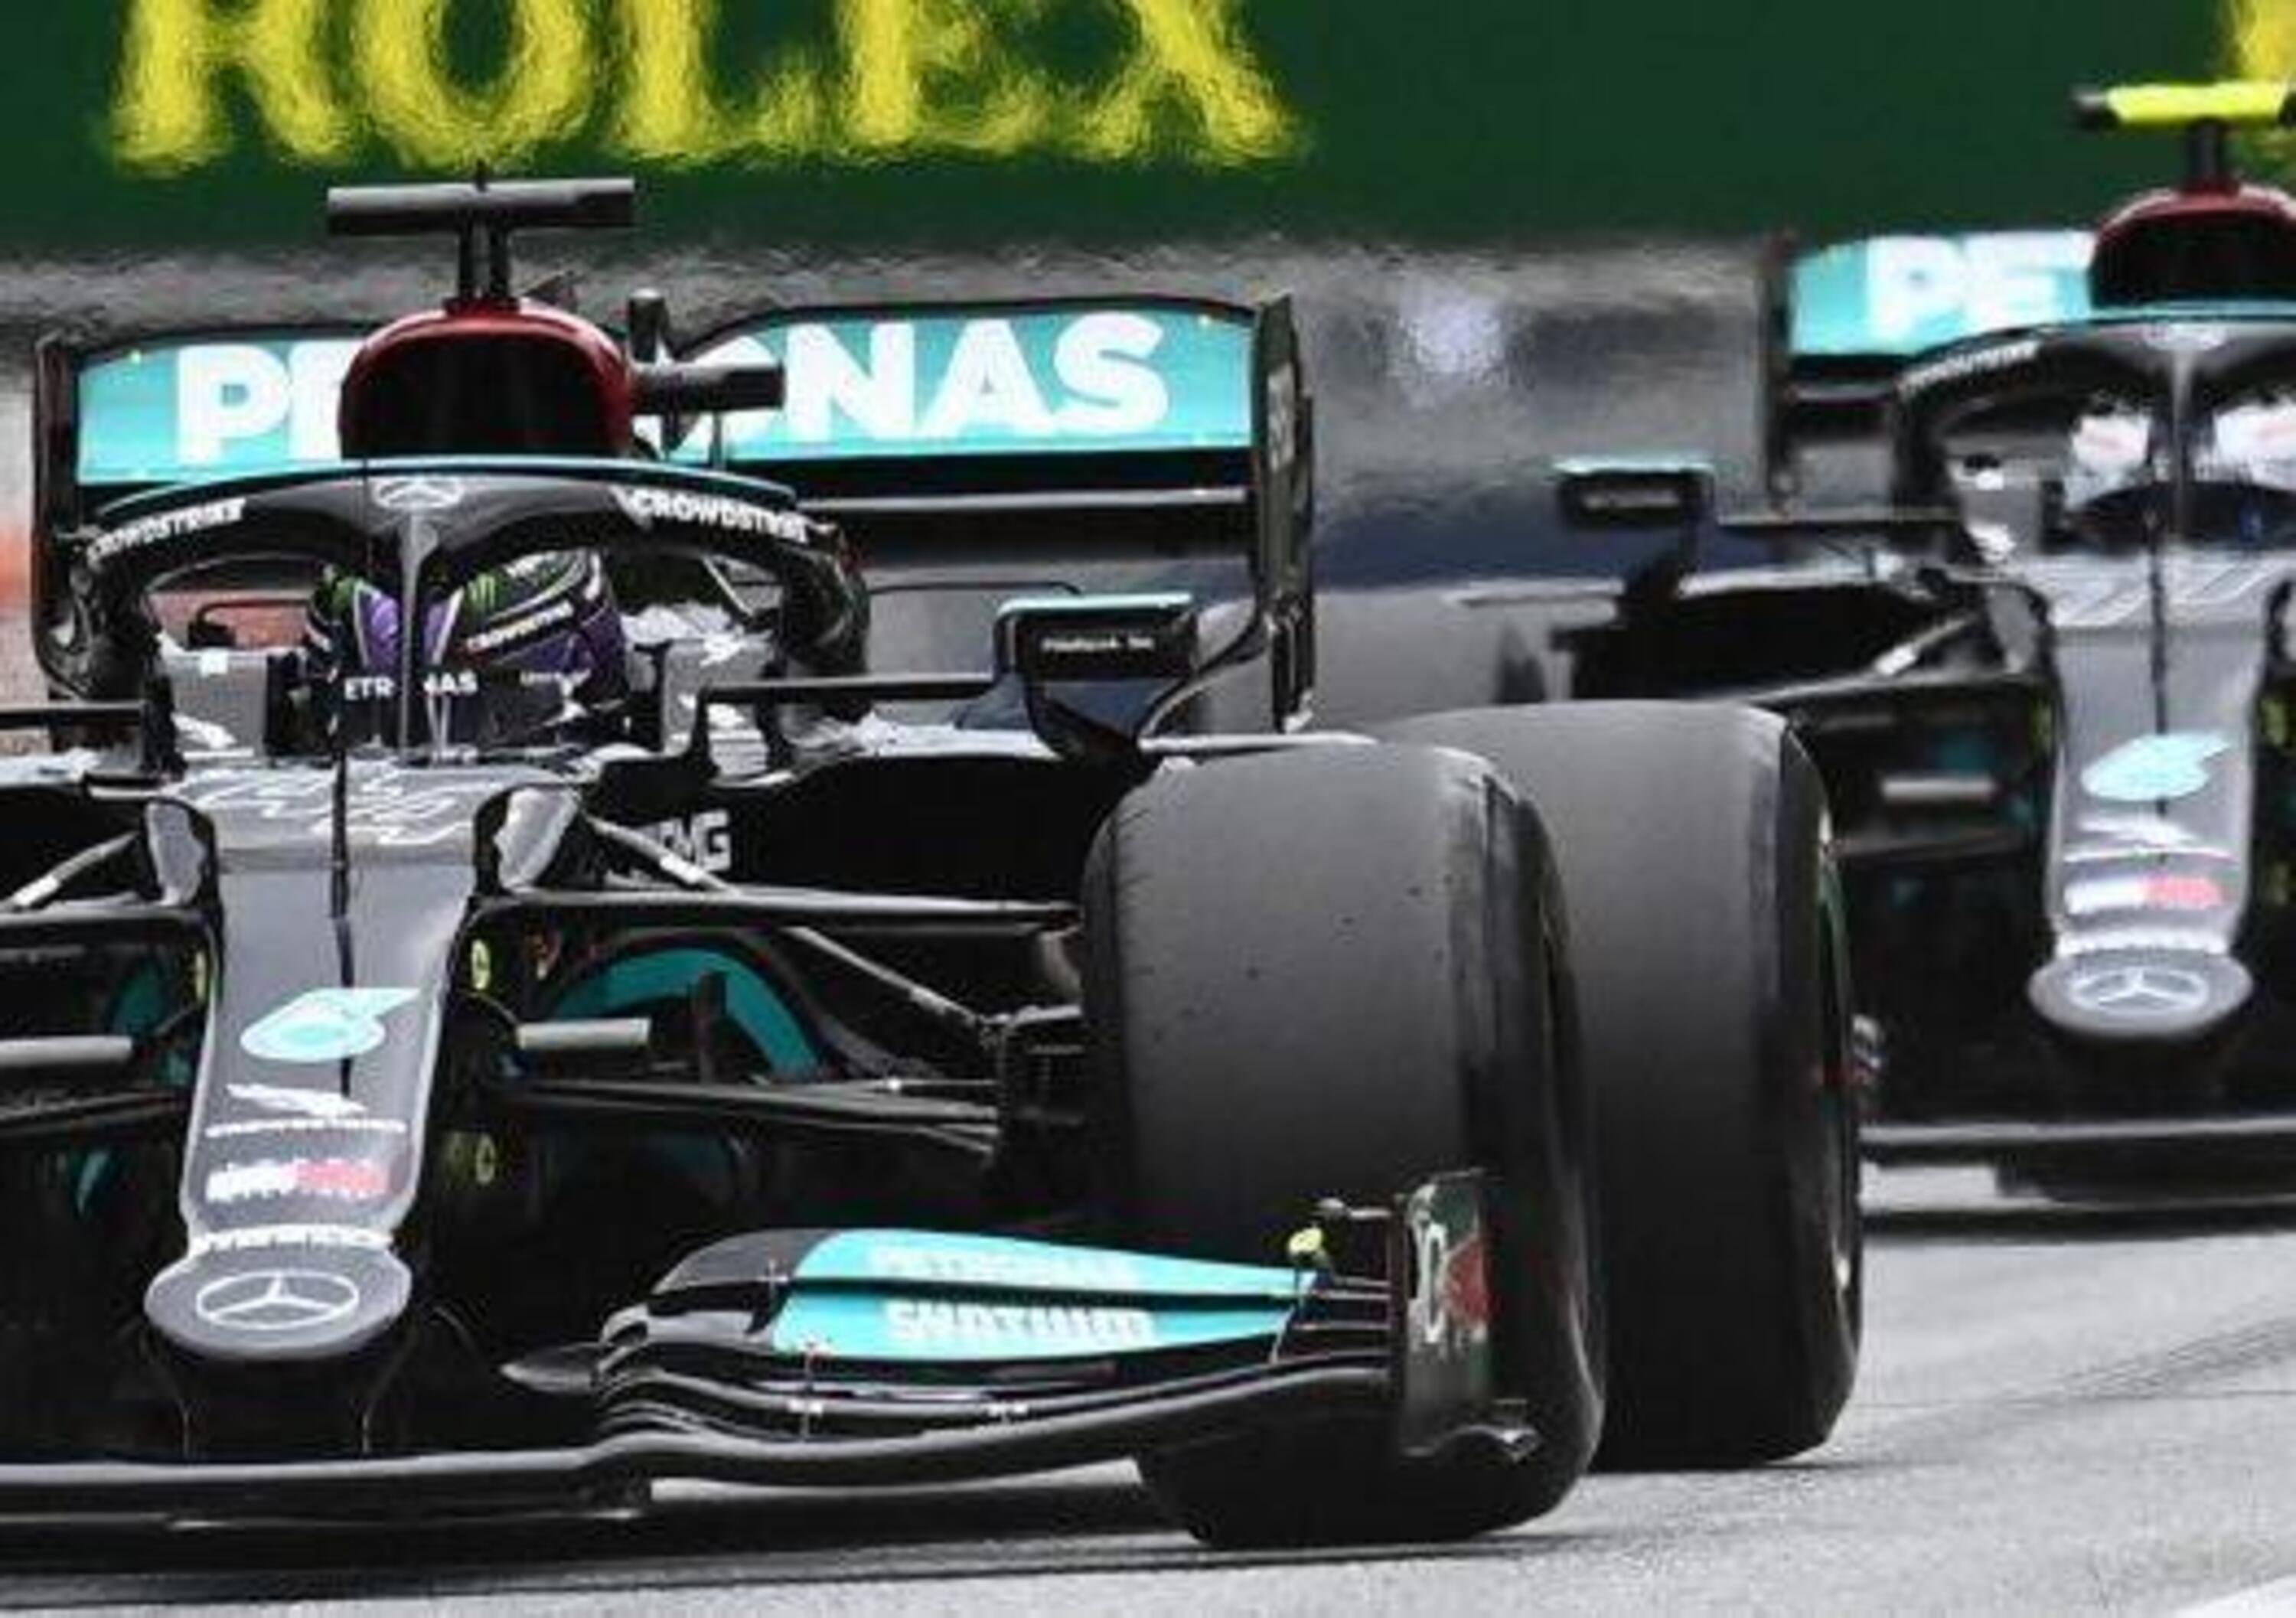 F1, GP Austria Analisi FP2: Hamilton lancia la sfida a Verstappen, Ferrari si conferma nel passo gara